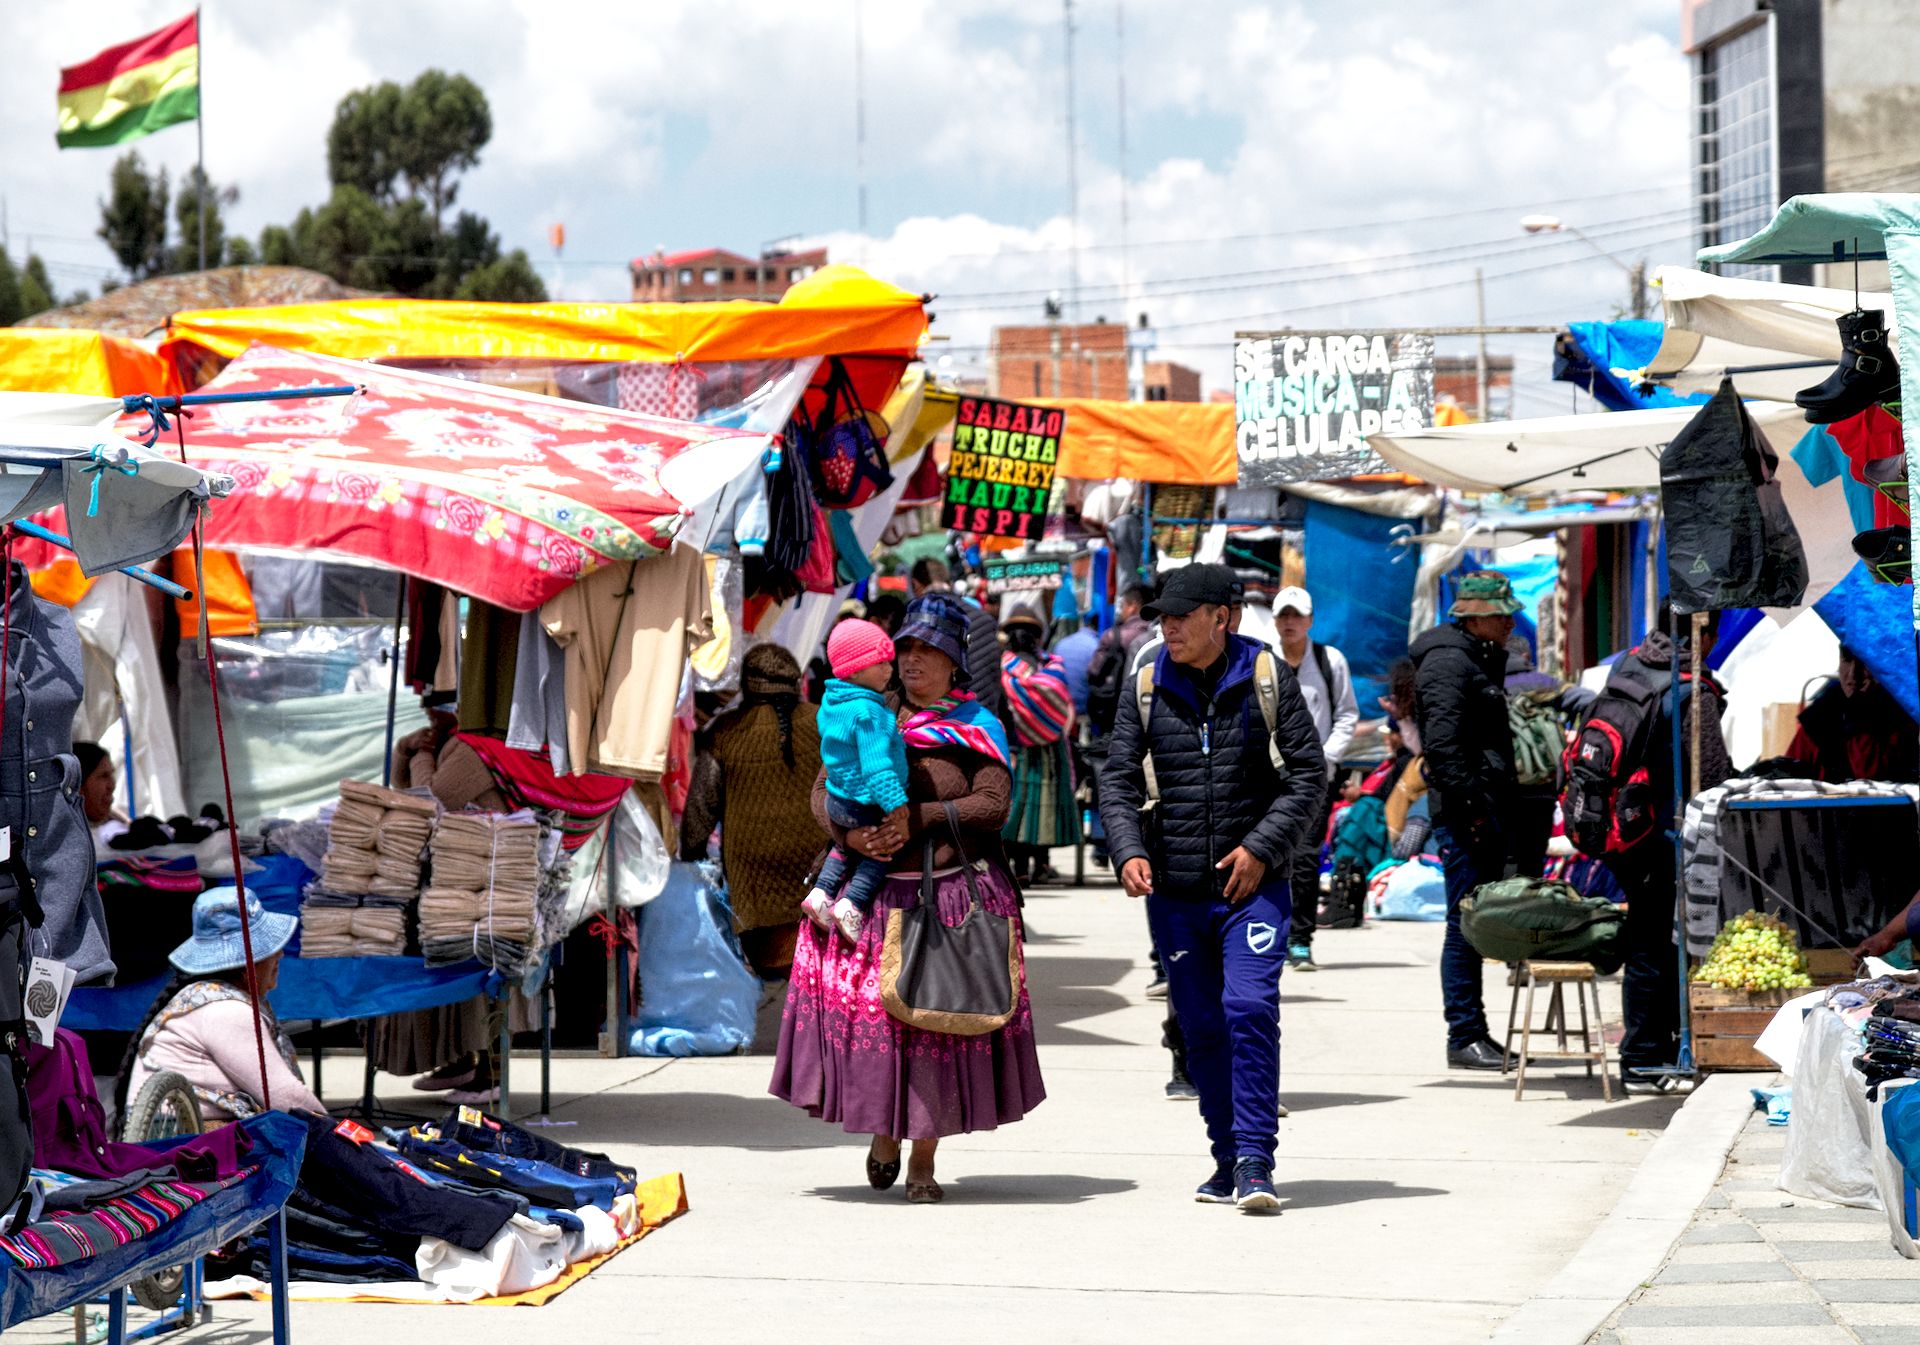 Unser erster Kulturschock in La Paz